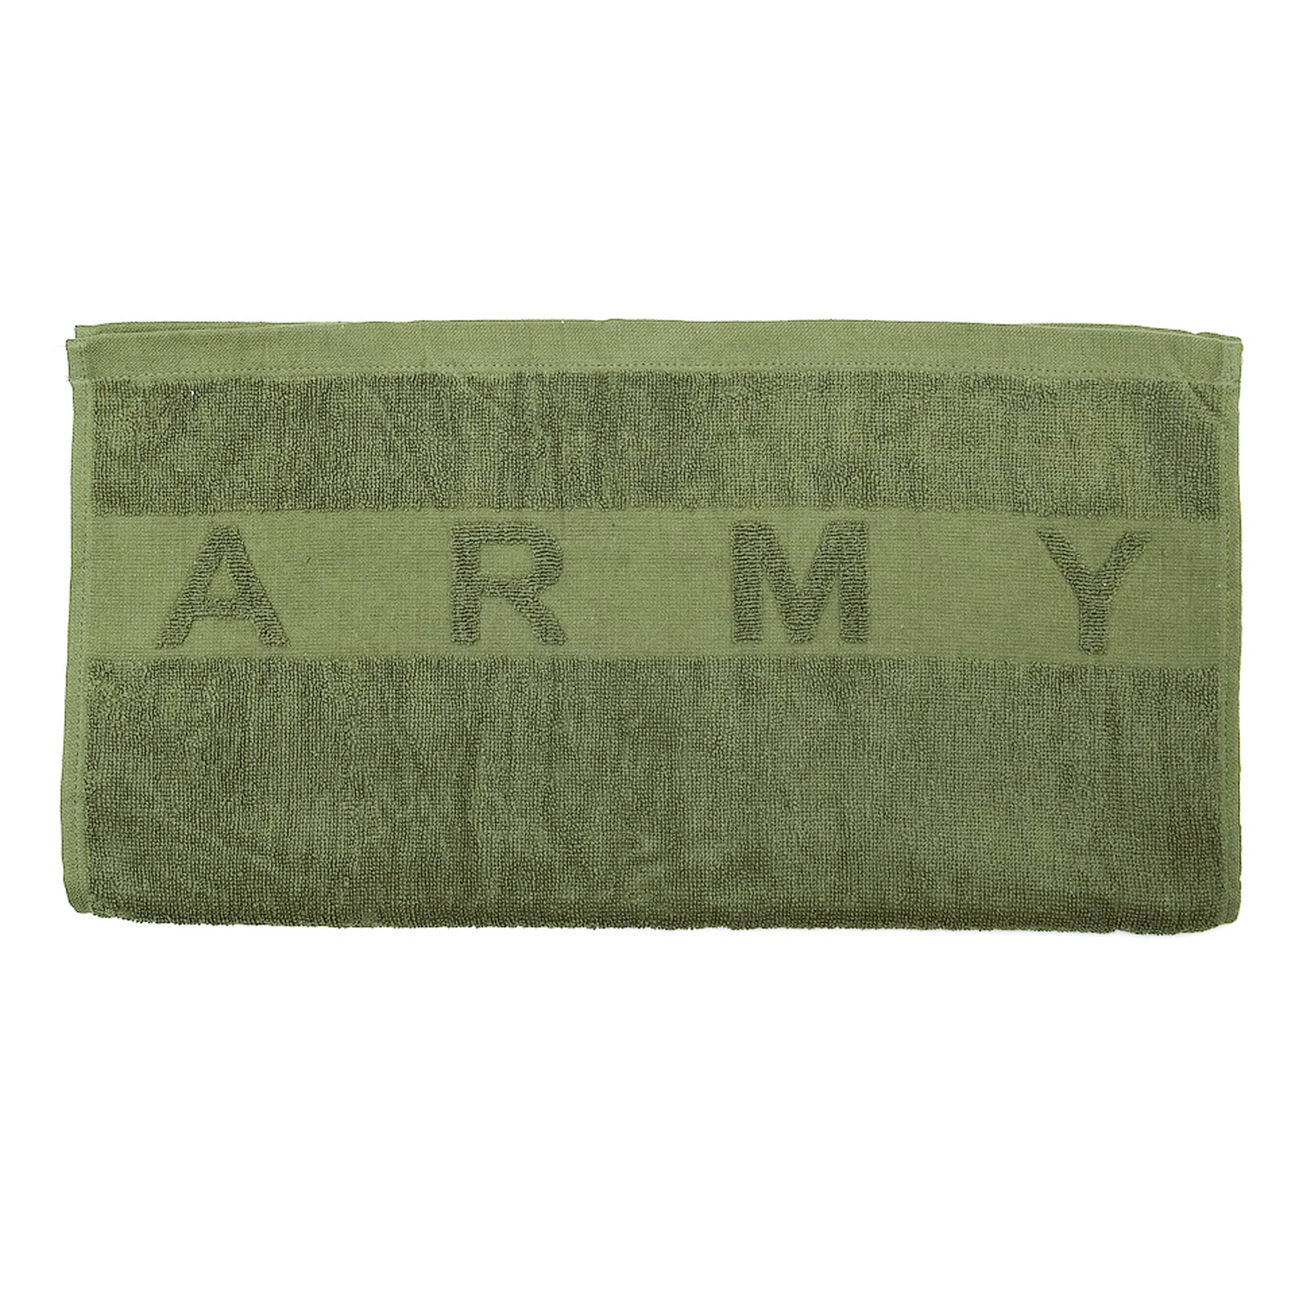 Handtuch Original US Army 100x50 cm oliv